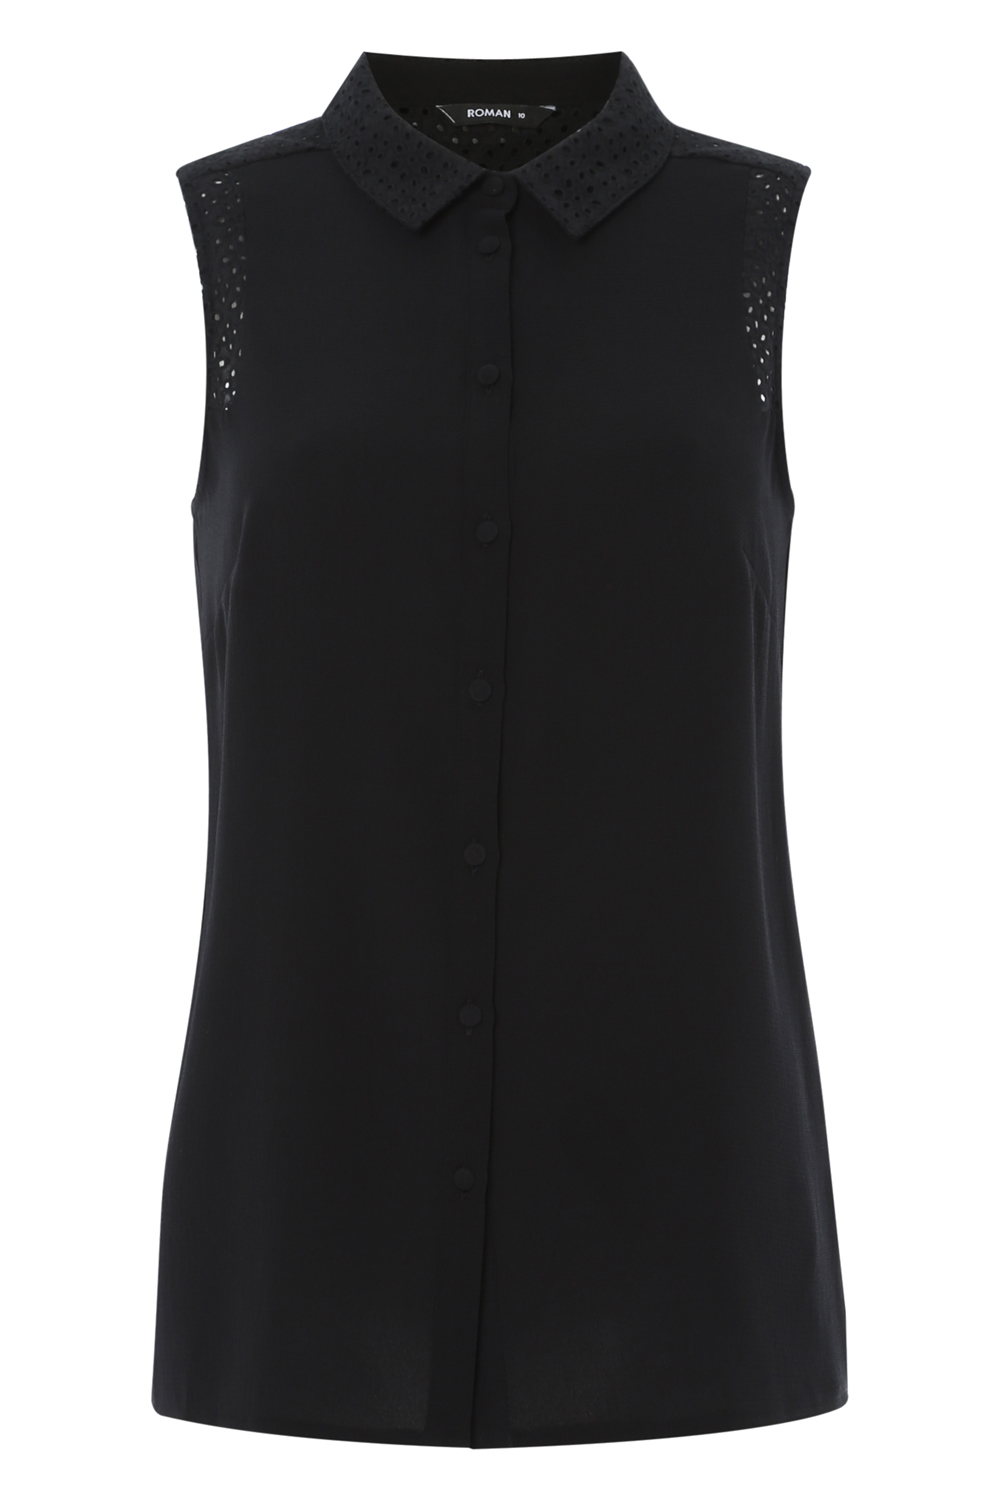 Black Sleeveless Lace Insert Shirt , Image 4 of 8